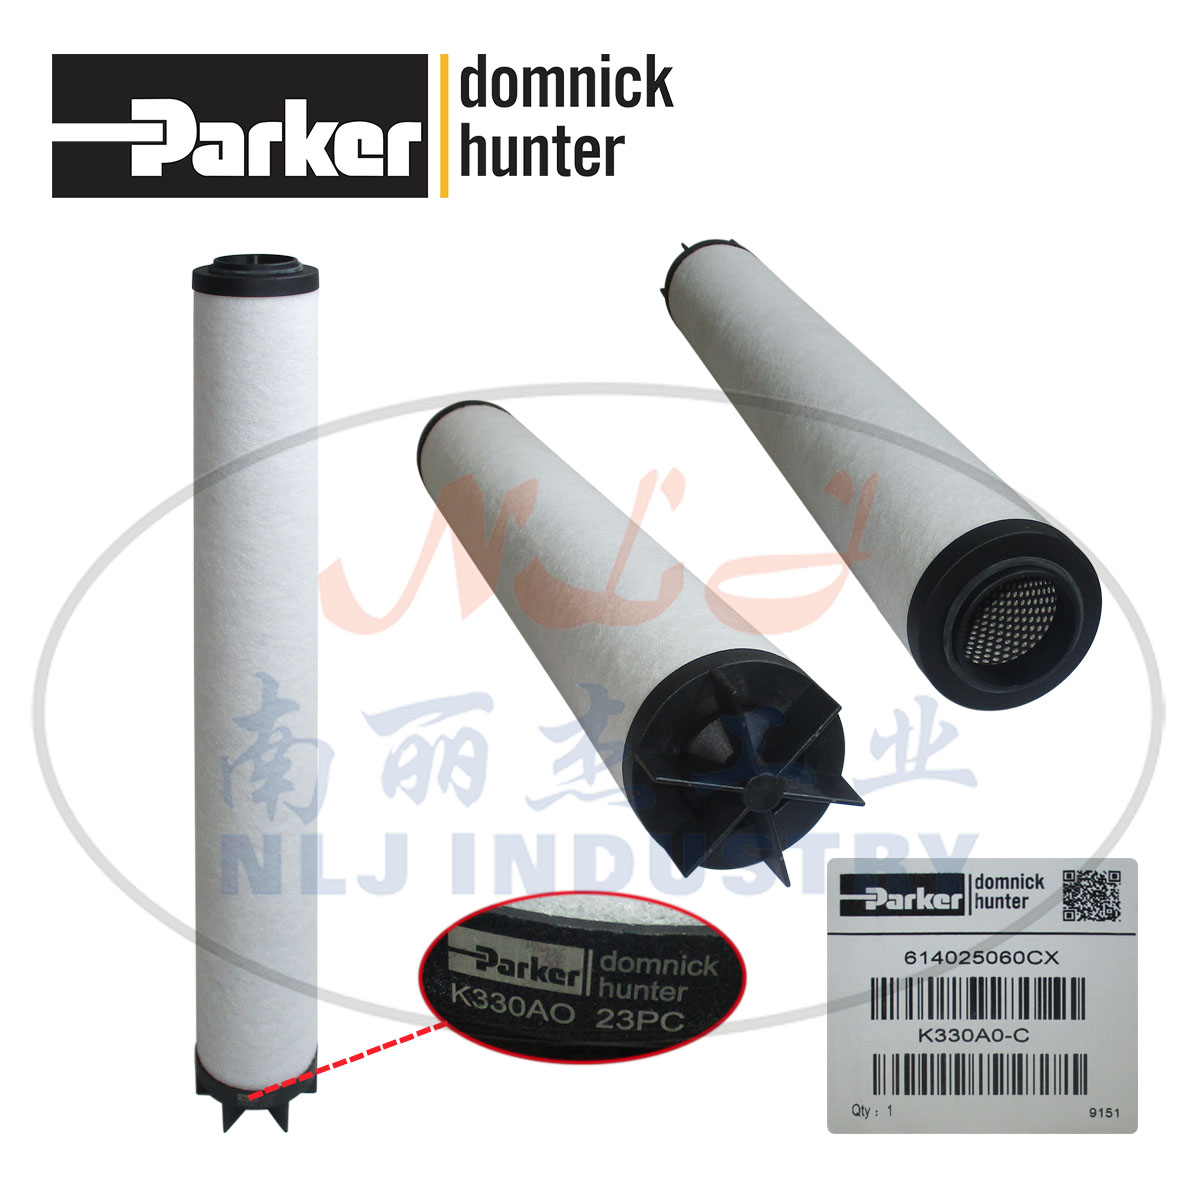 Parker(ɿ)domnick hunter˺оK330AO-C